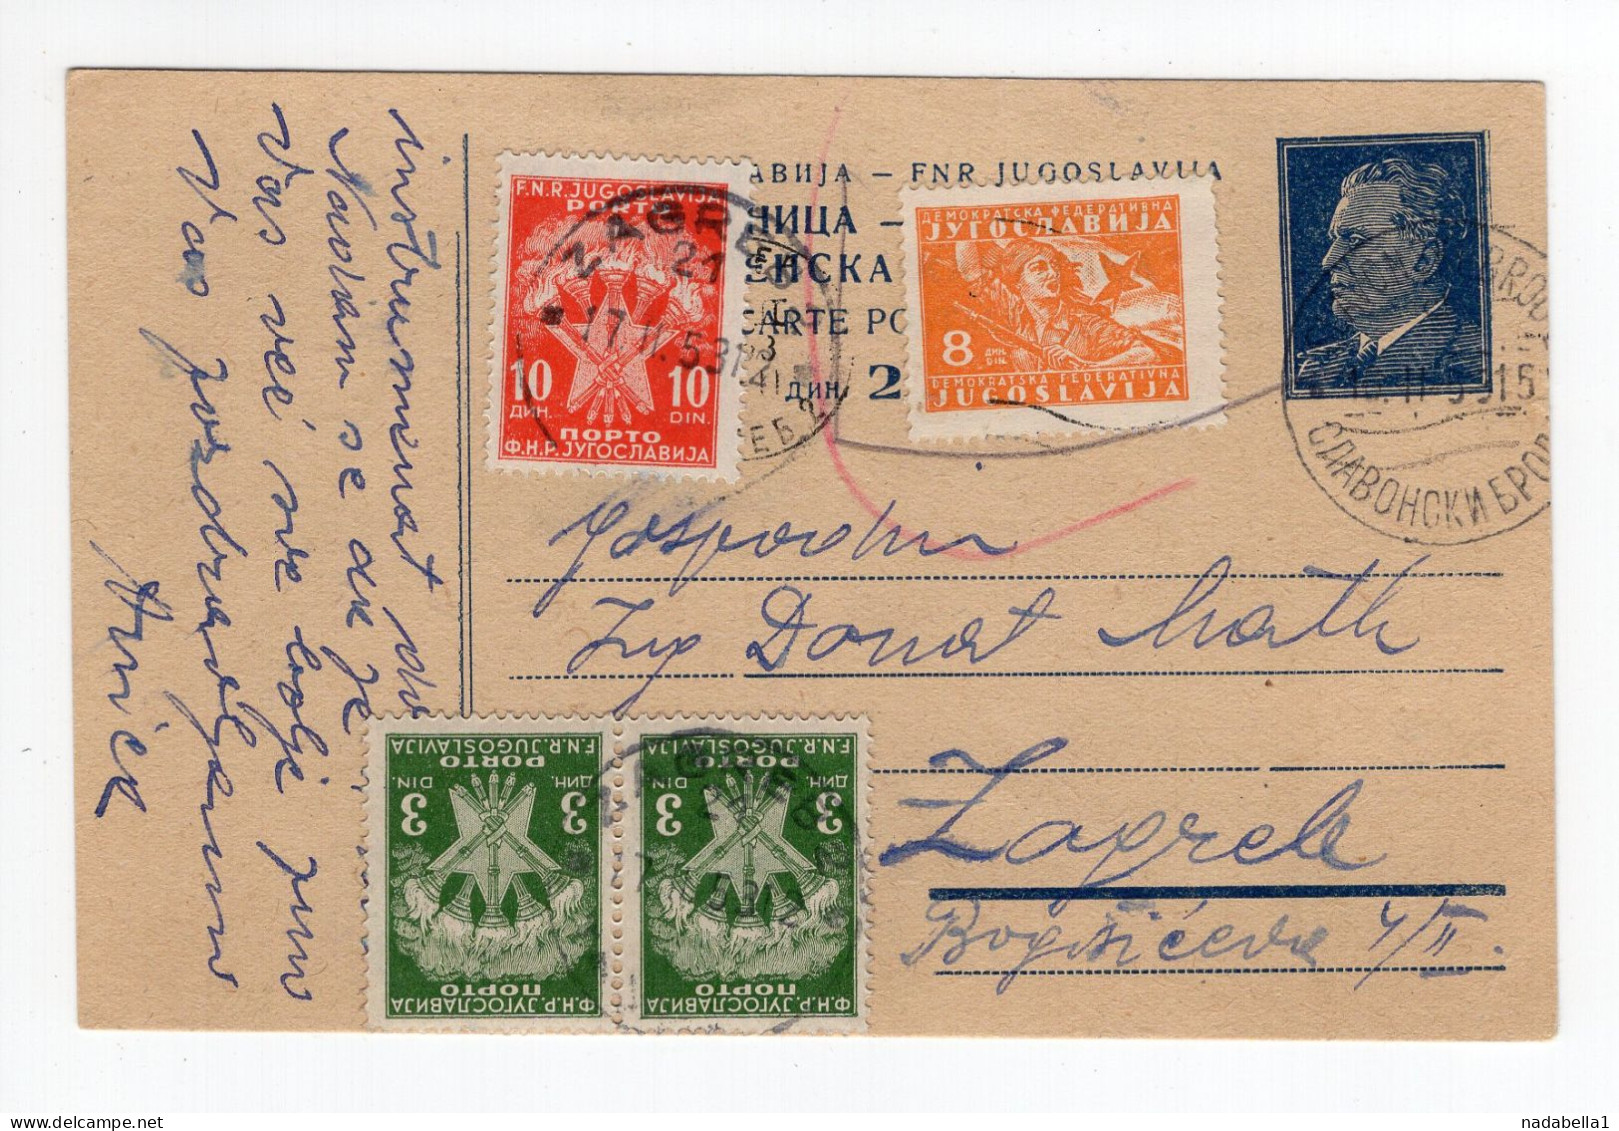 1953. YUGOSLAVIA,CROATIA,SLAVONSKI BROD,STATIONERY CARD,USED,POSTAGE DUE IN ZAGREB - Strafport